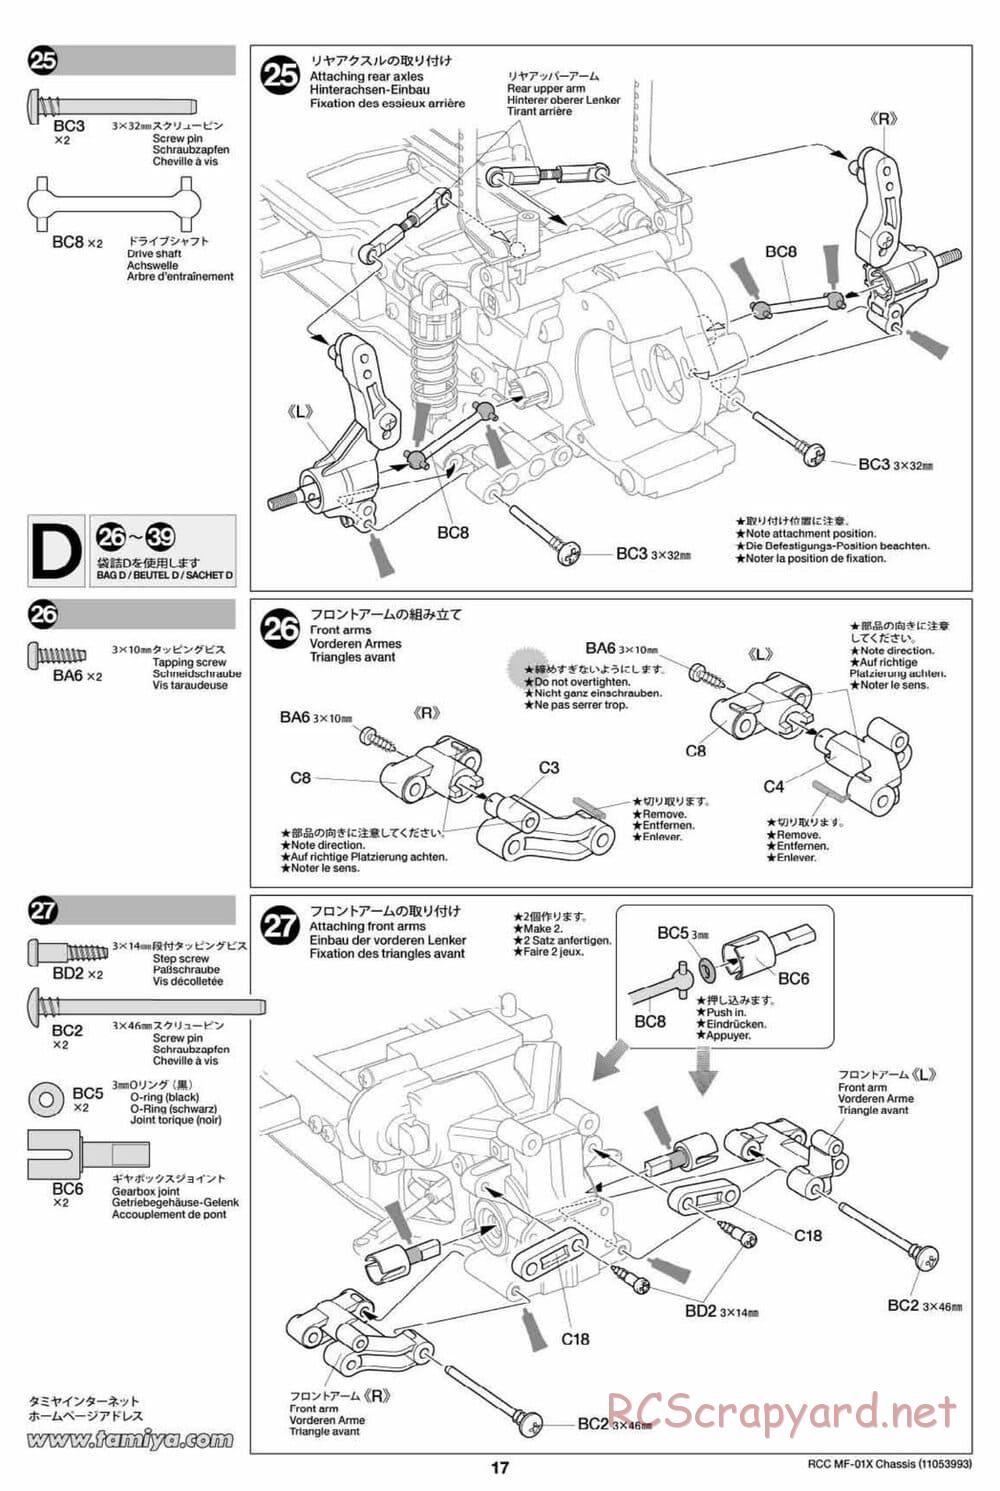 Tamiya - MF-01X Chassis - Manual - Page 17